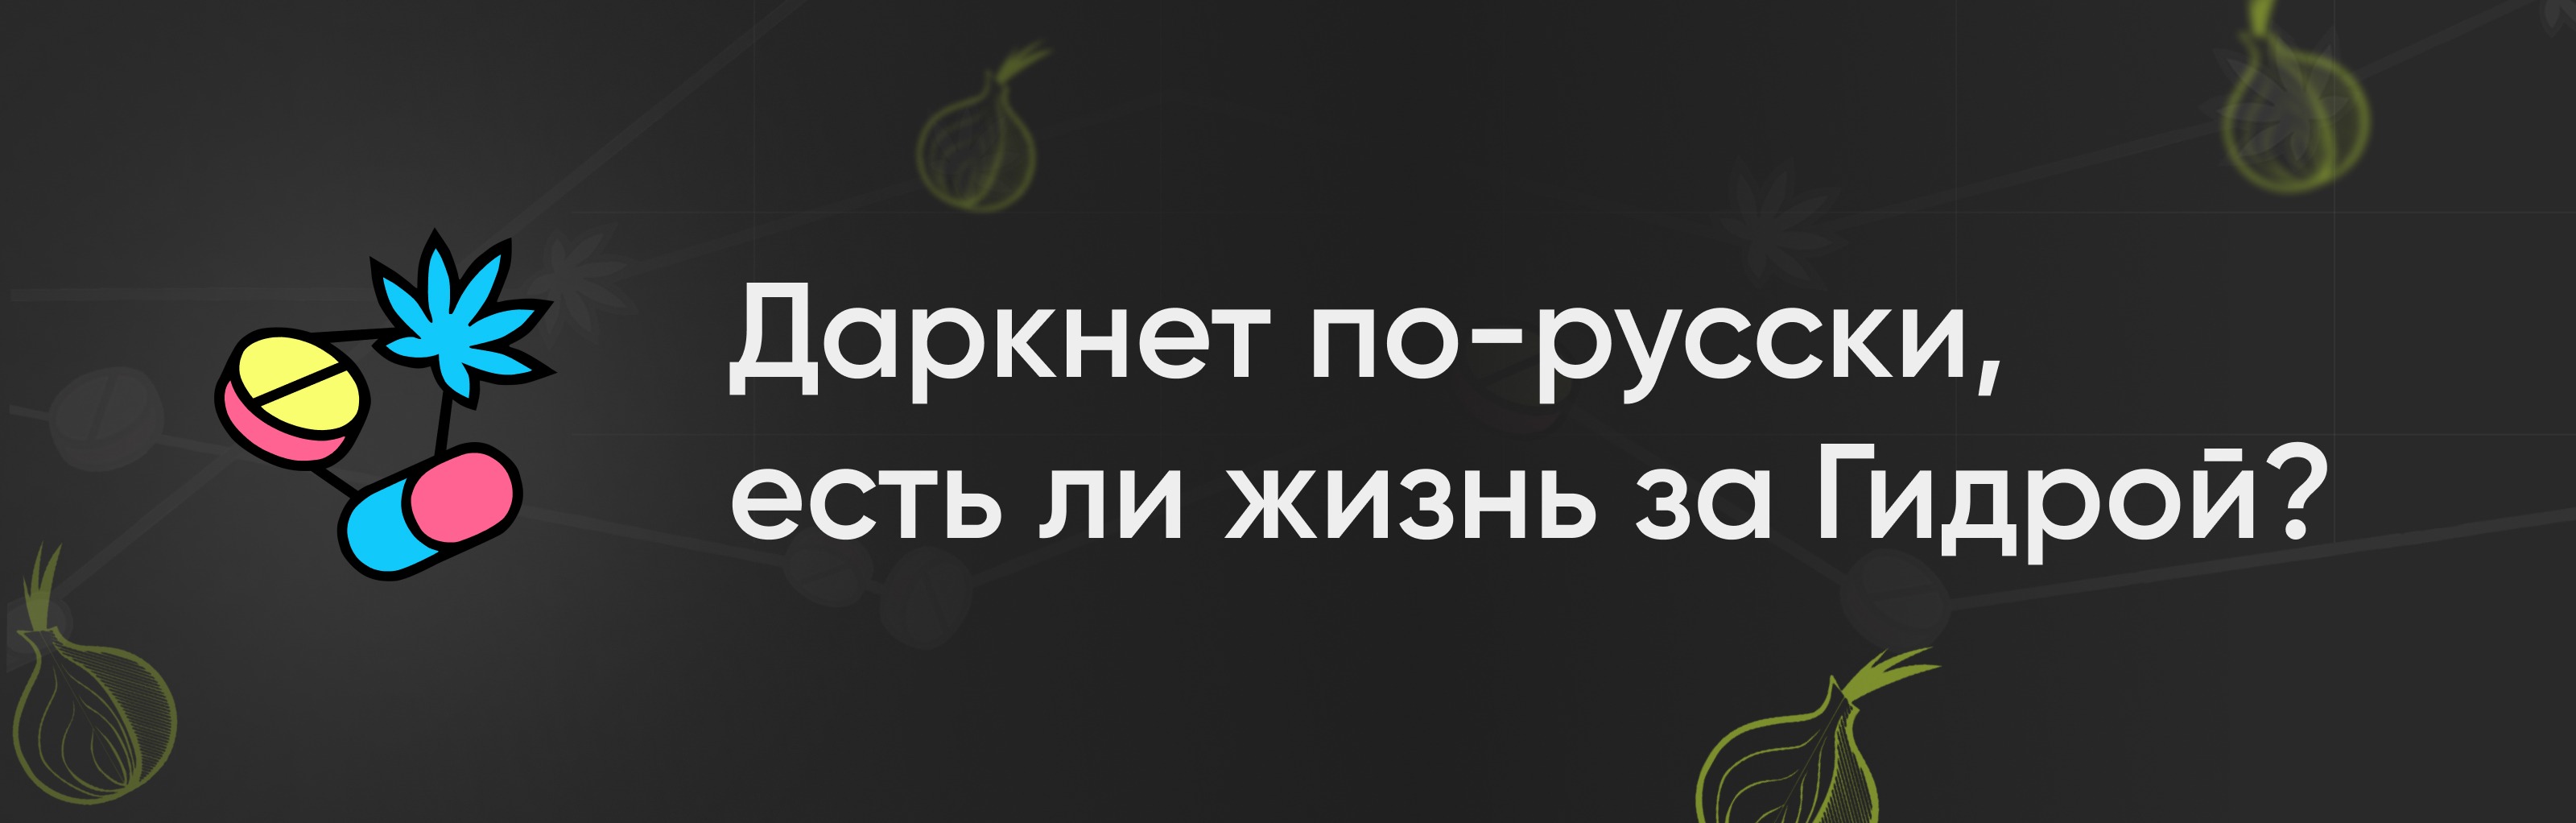 Скачать blacksprut на русском бесплатно для iphone даркнет настройка blacksprut ростелеком даркнет